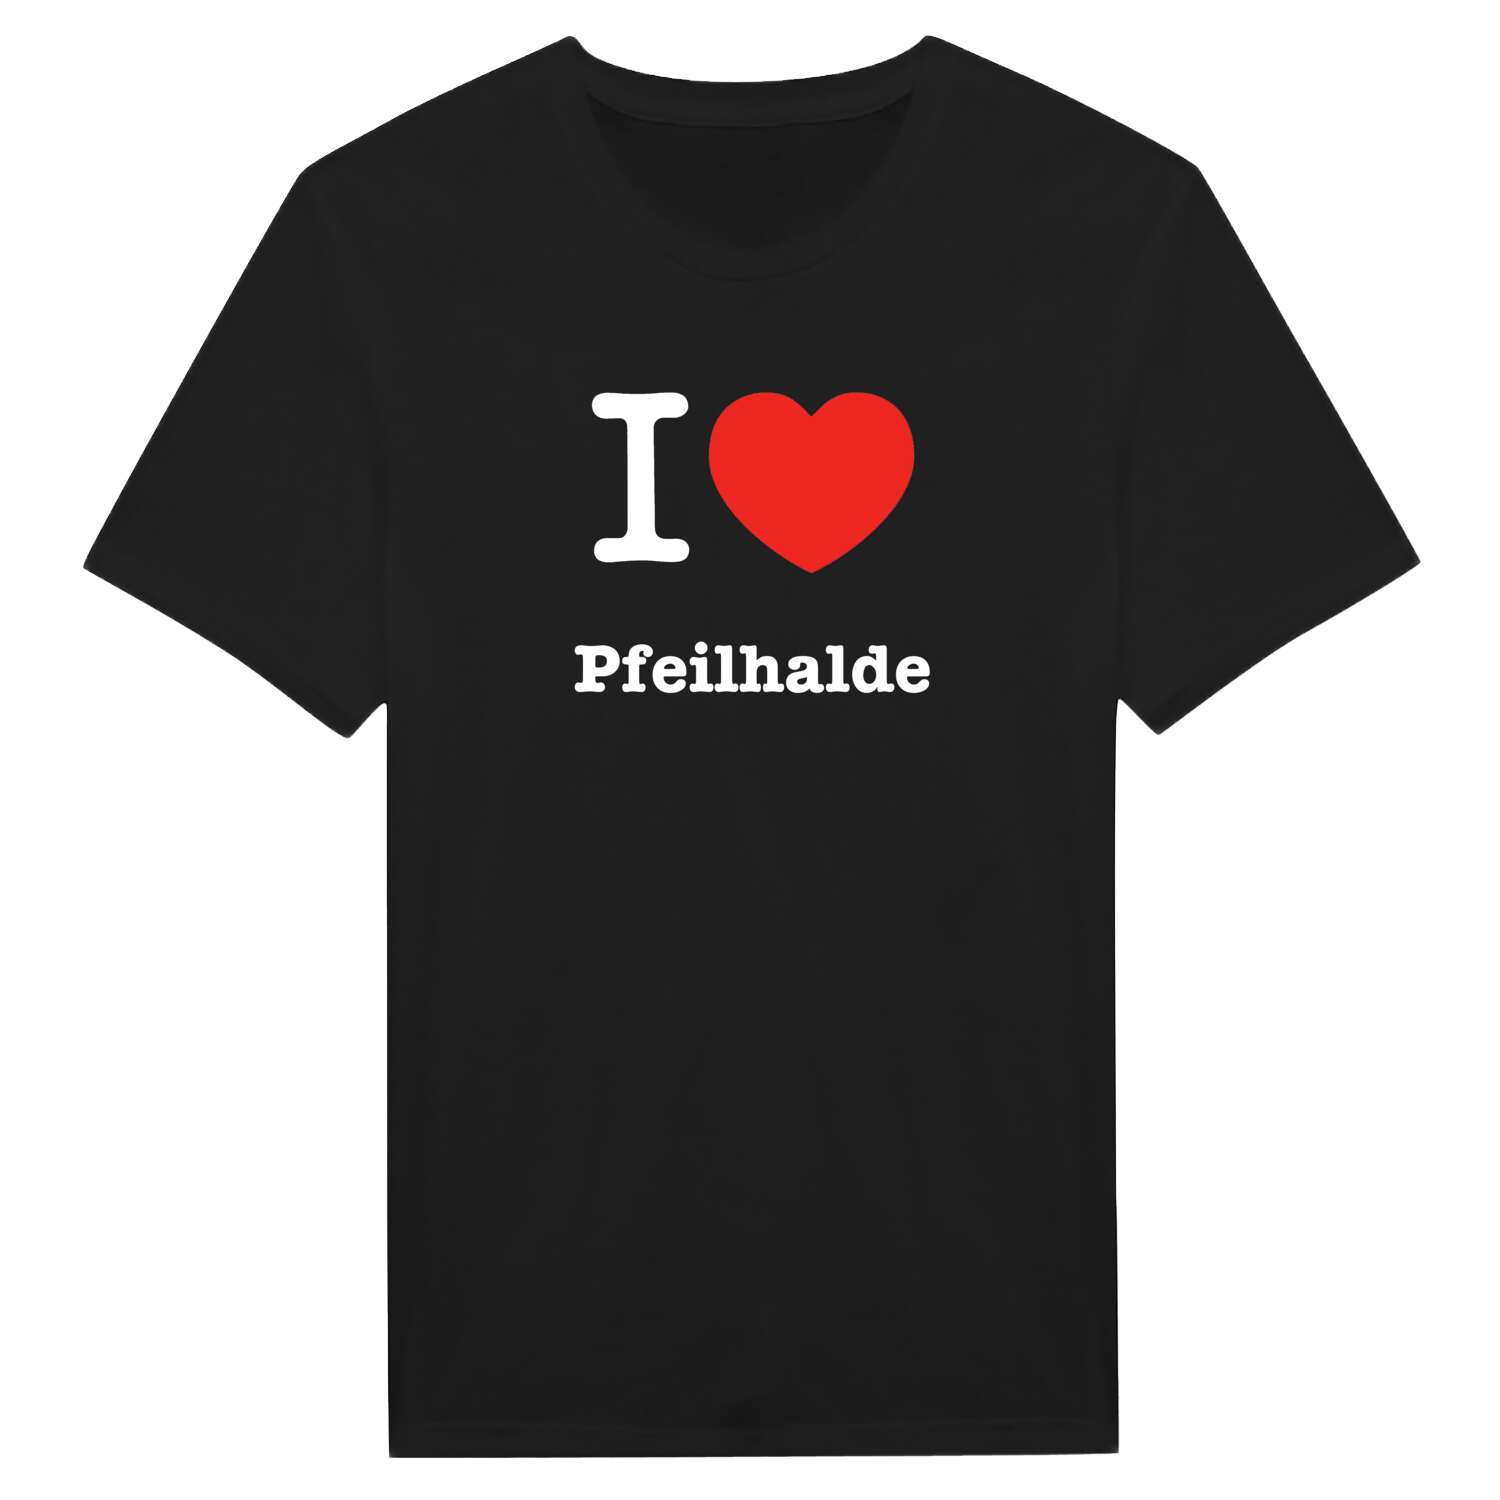 Pfeilhalde T-Shirt »I love«